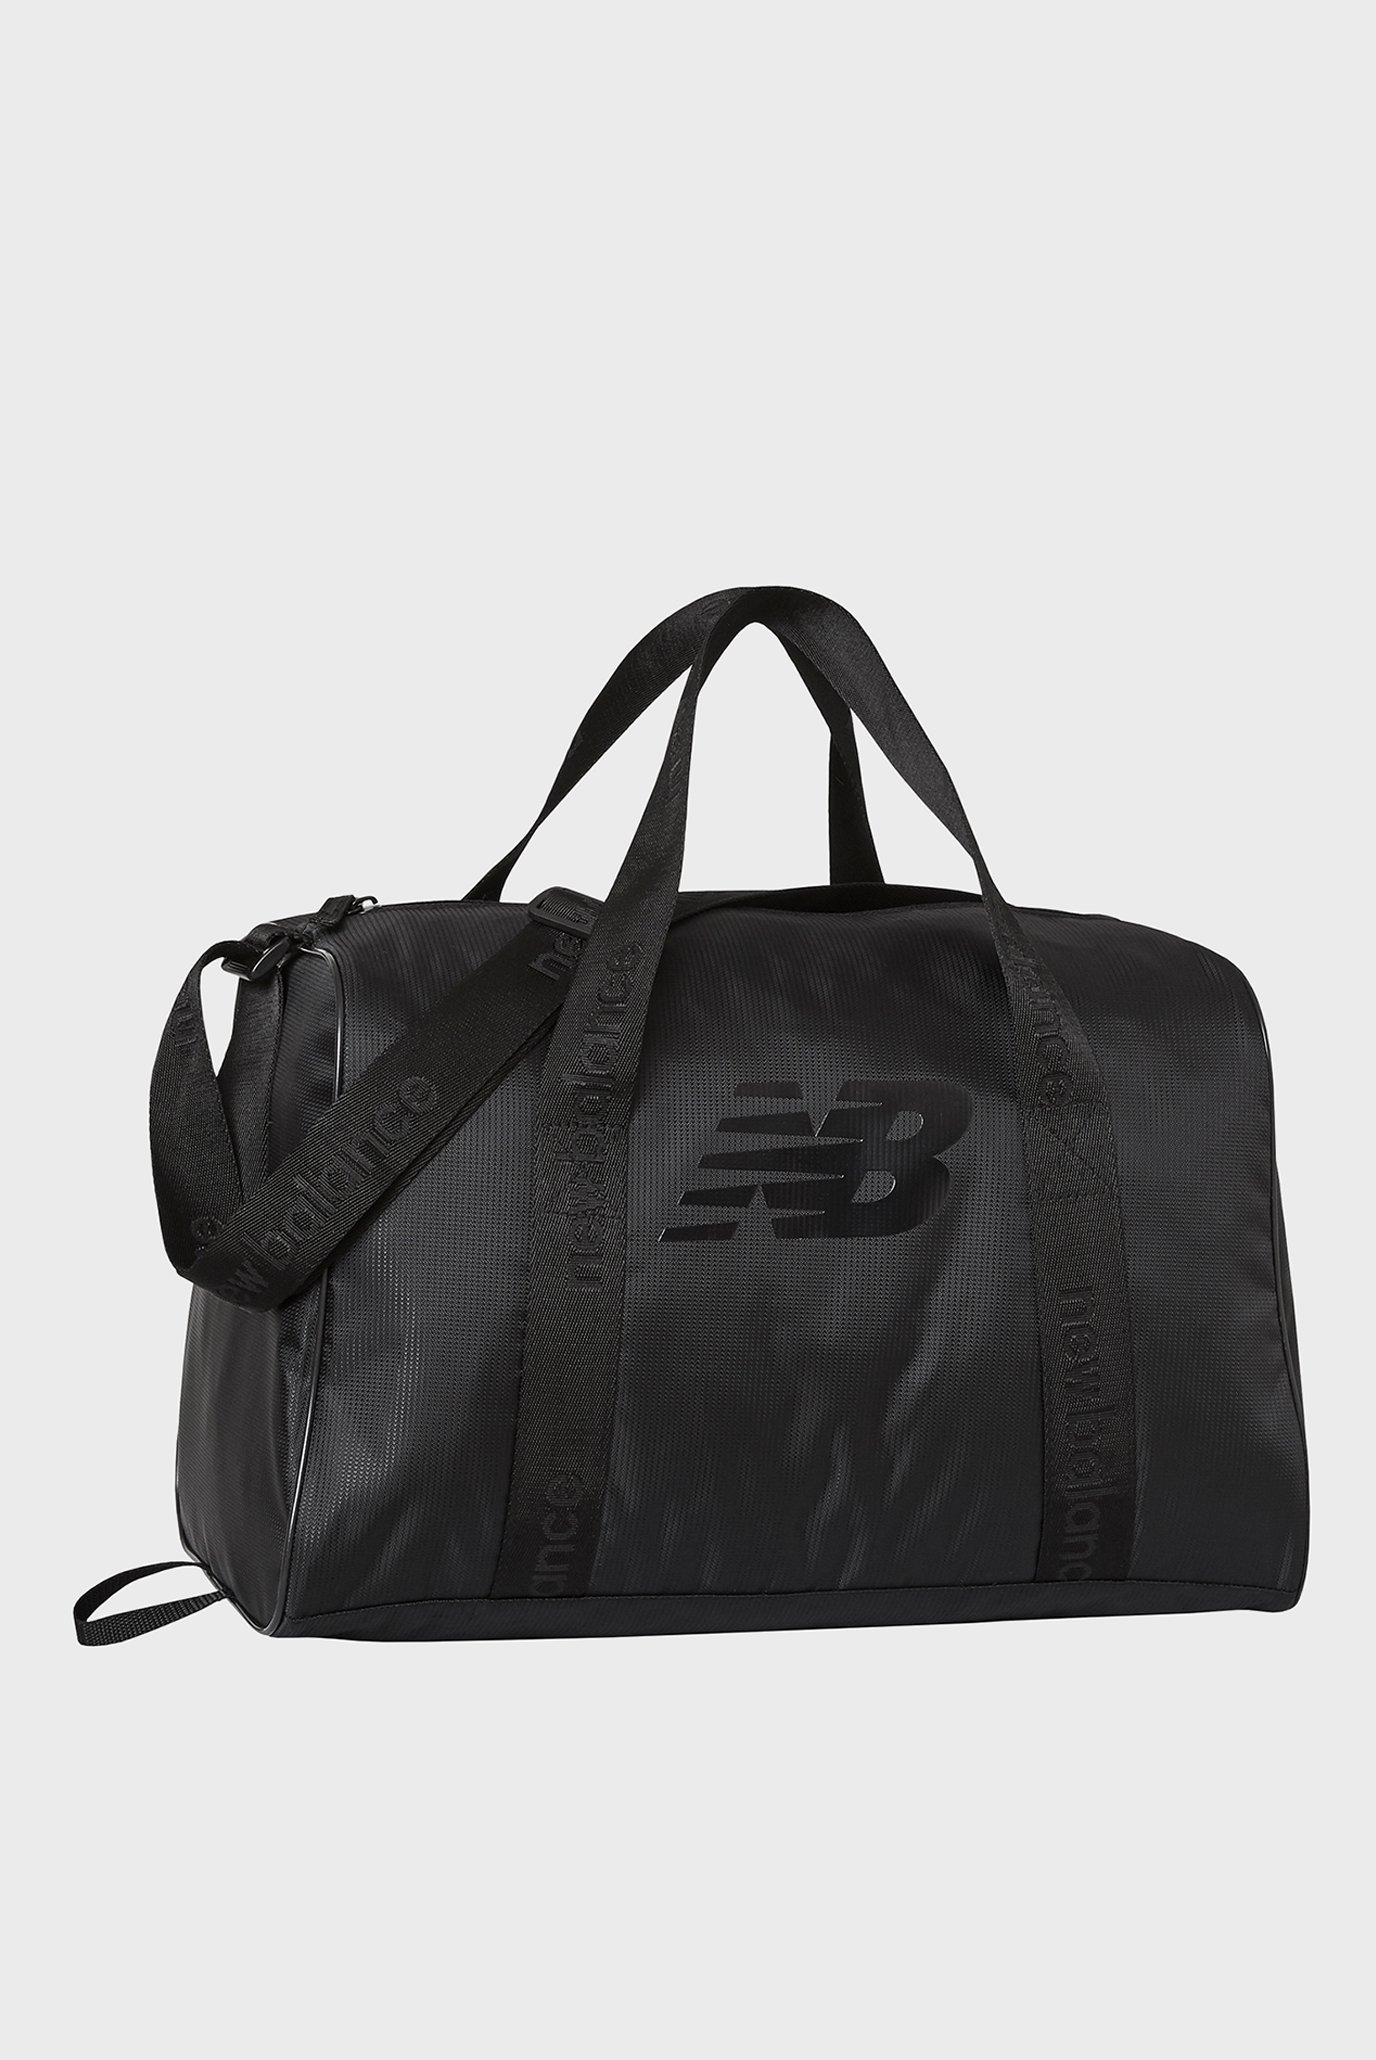 Чорна спортивна сумка Opp Core Small Duffel 1